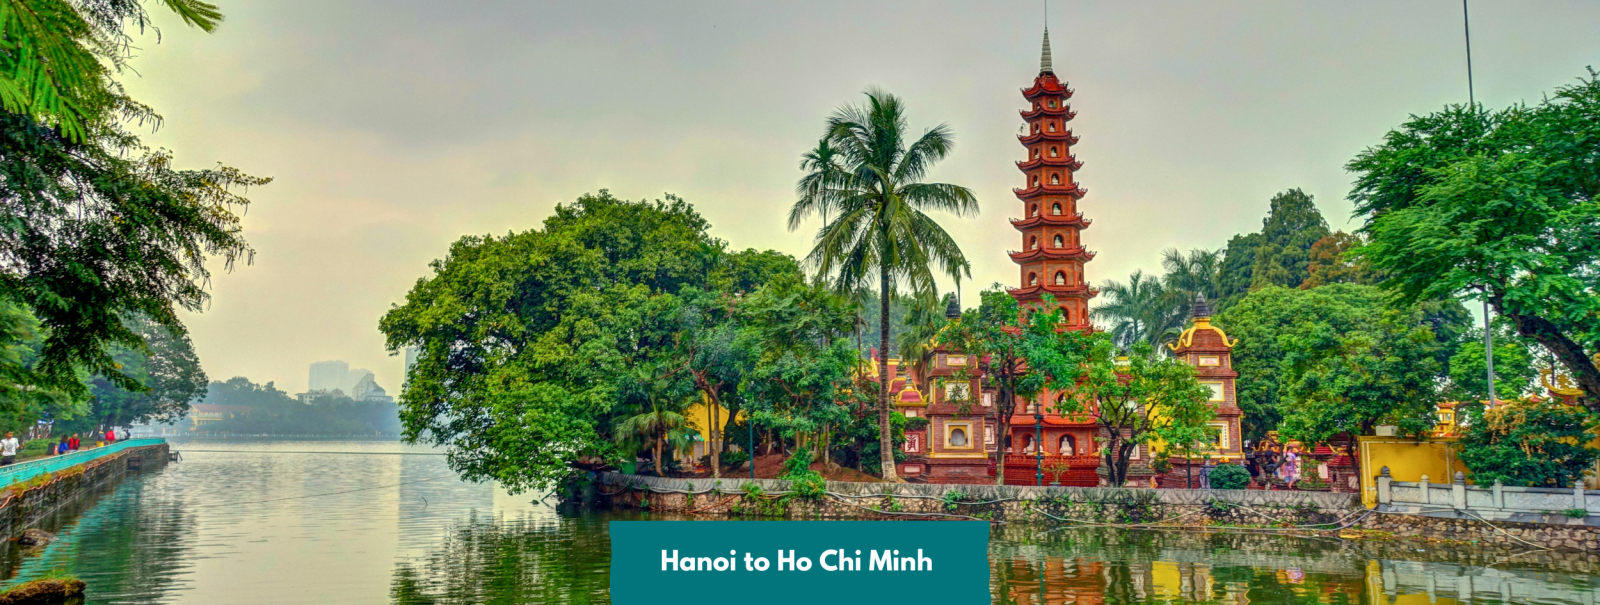 Hanoi to Ho Chi Minh 